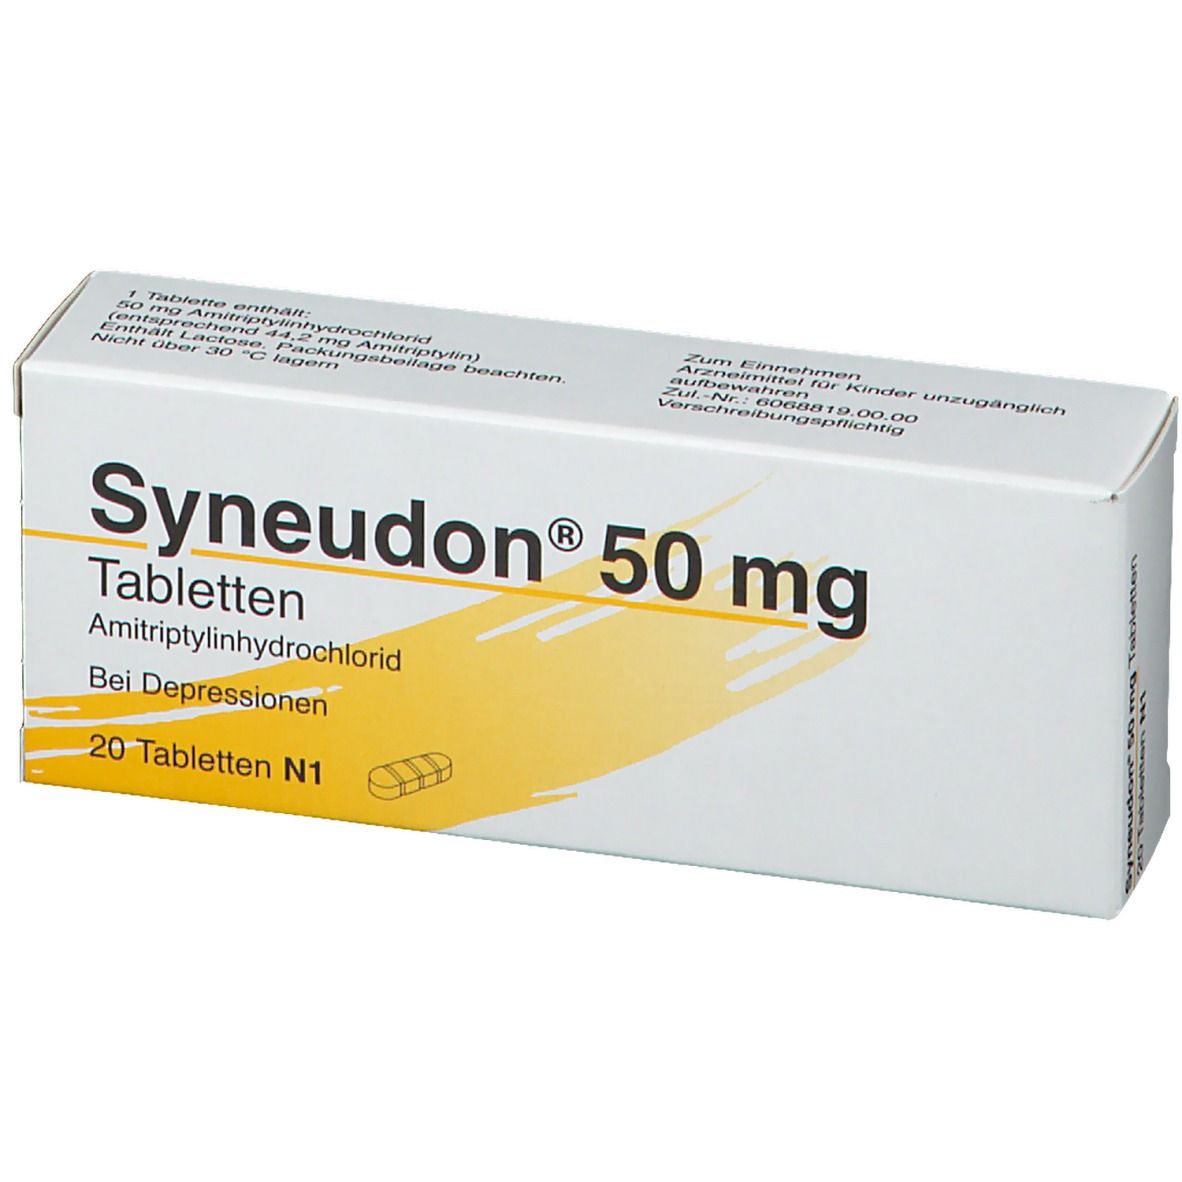 Syneudon® 50 mg